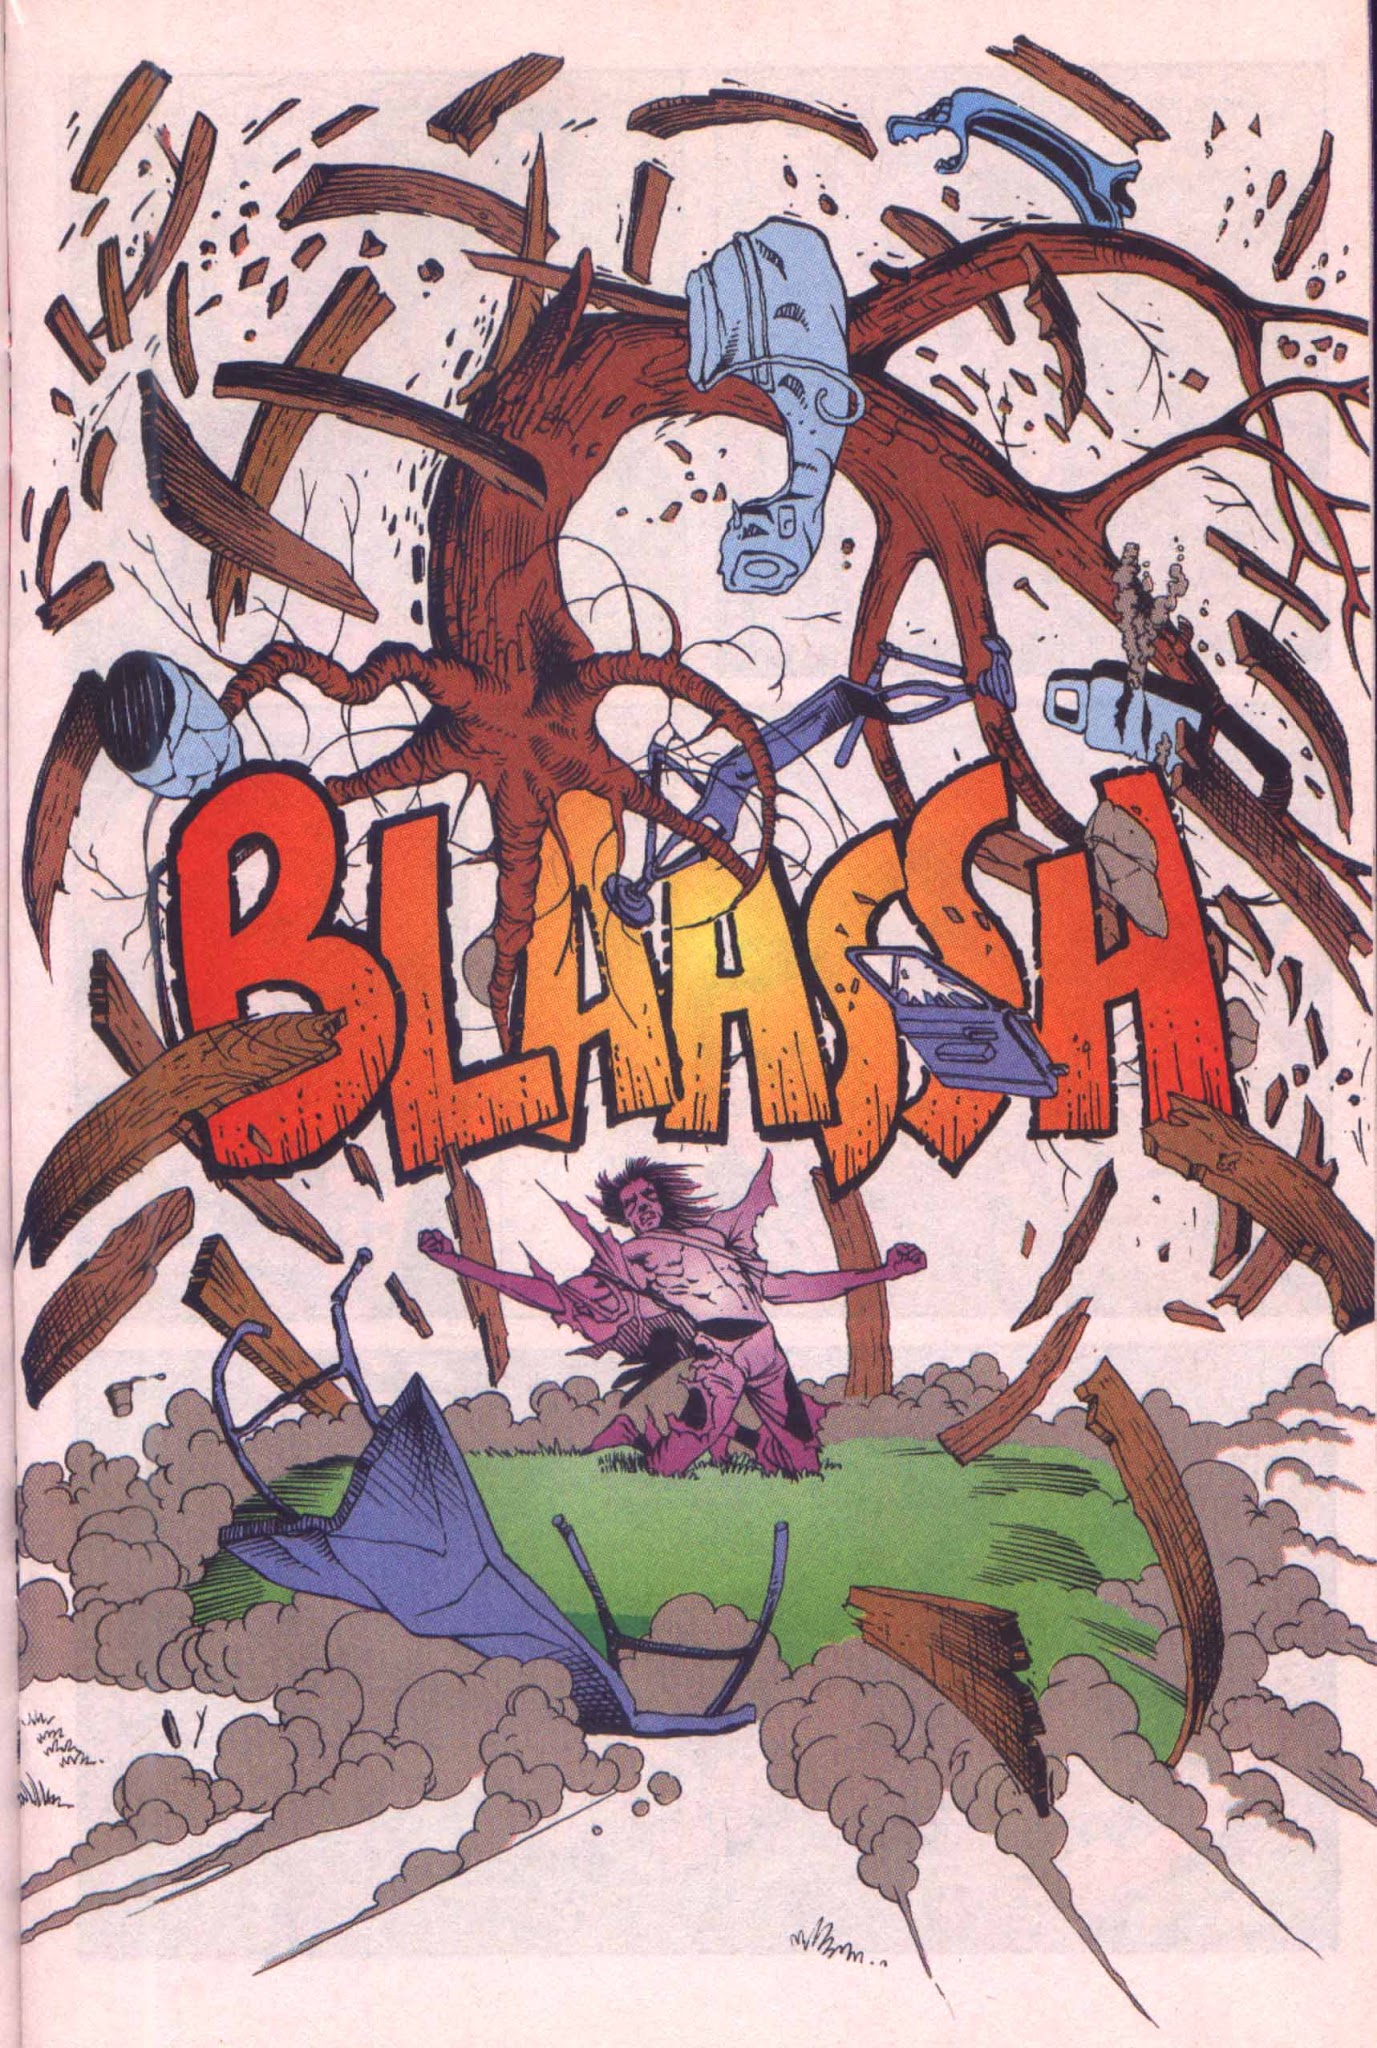 Read online Black Condor comic -  Issue #6 - 11